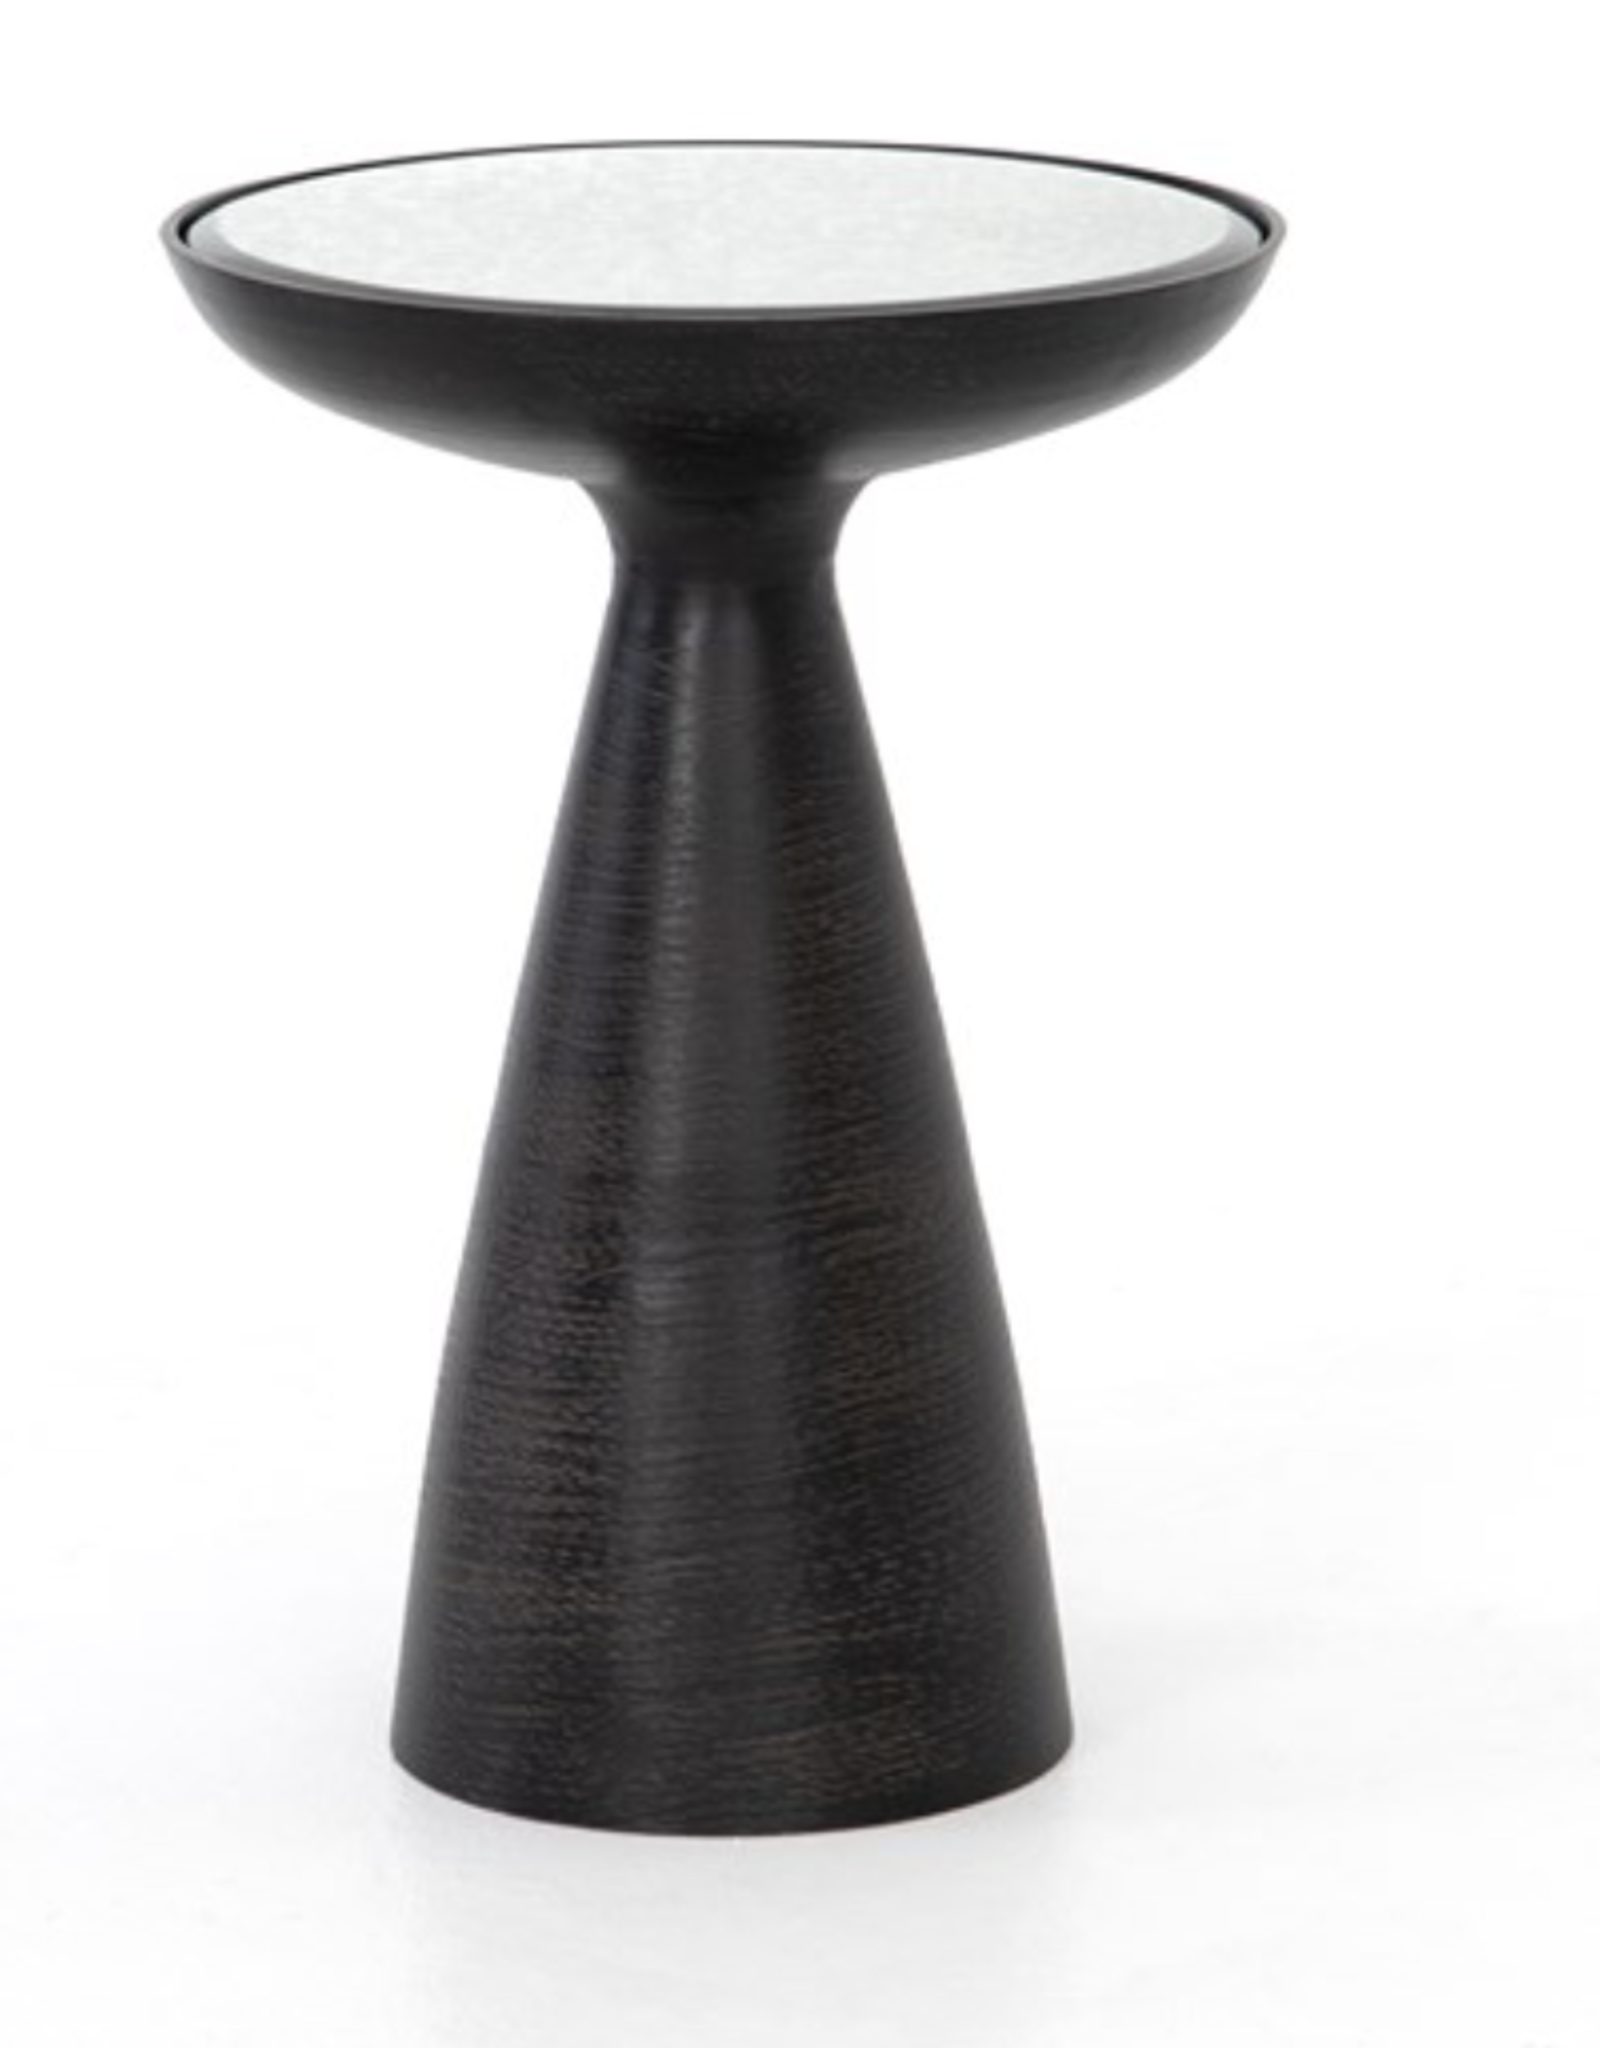 Marlow Mod Pedestal Table - Brushed Bronze